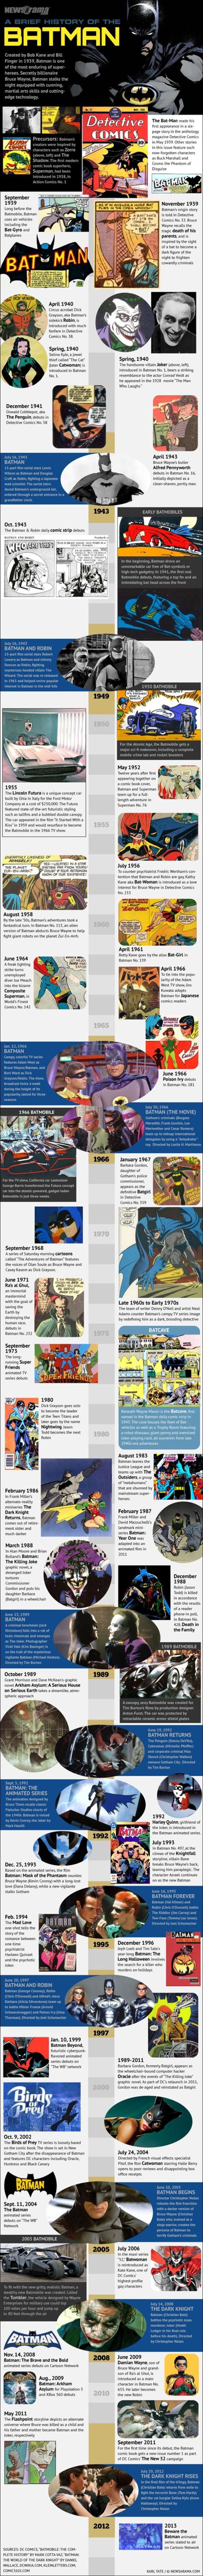 Batman de 1939 à 2012 en 1 image